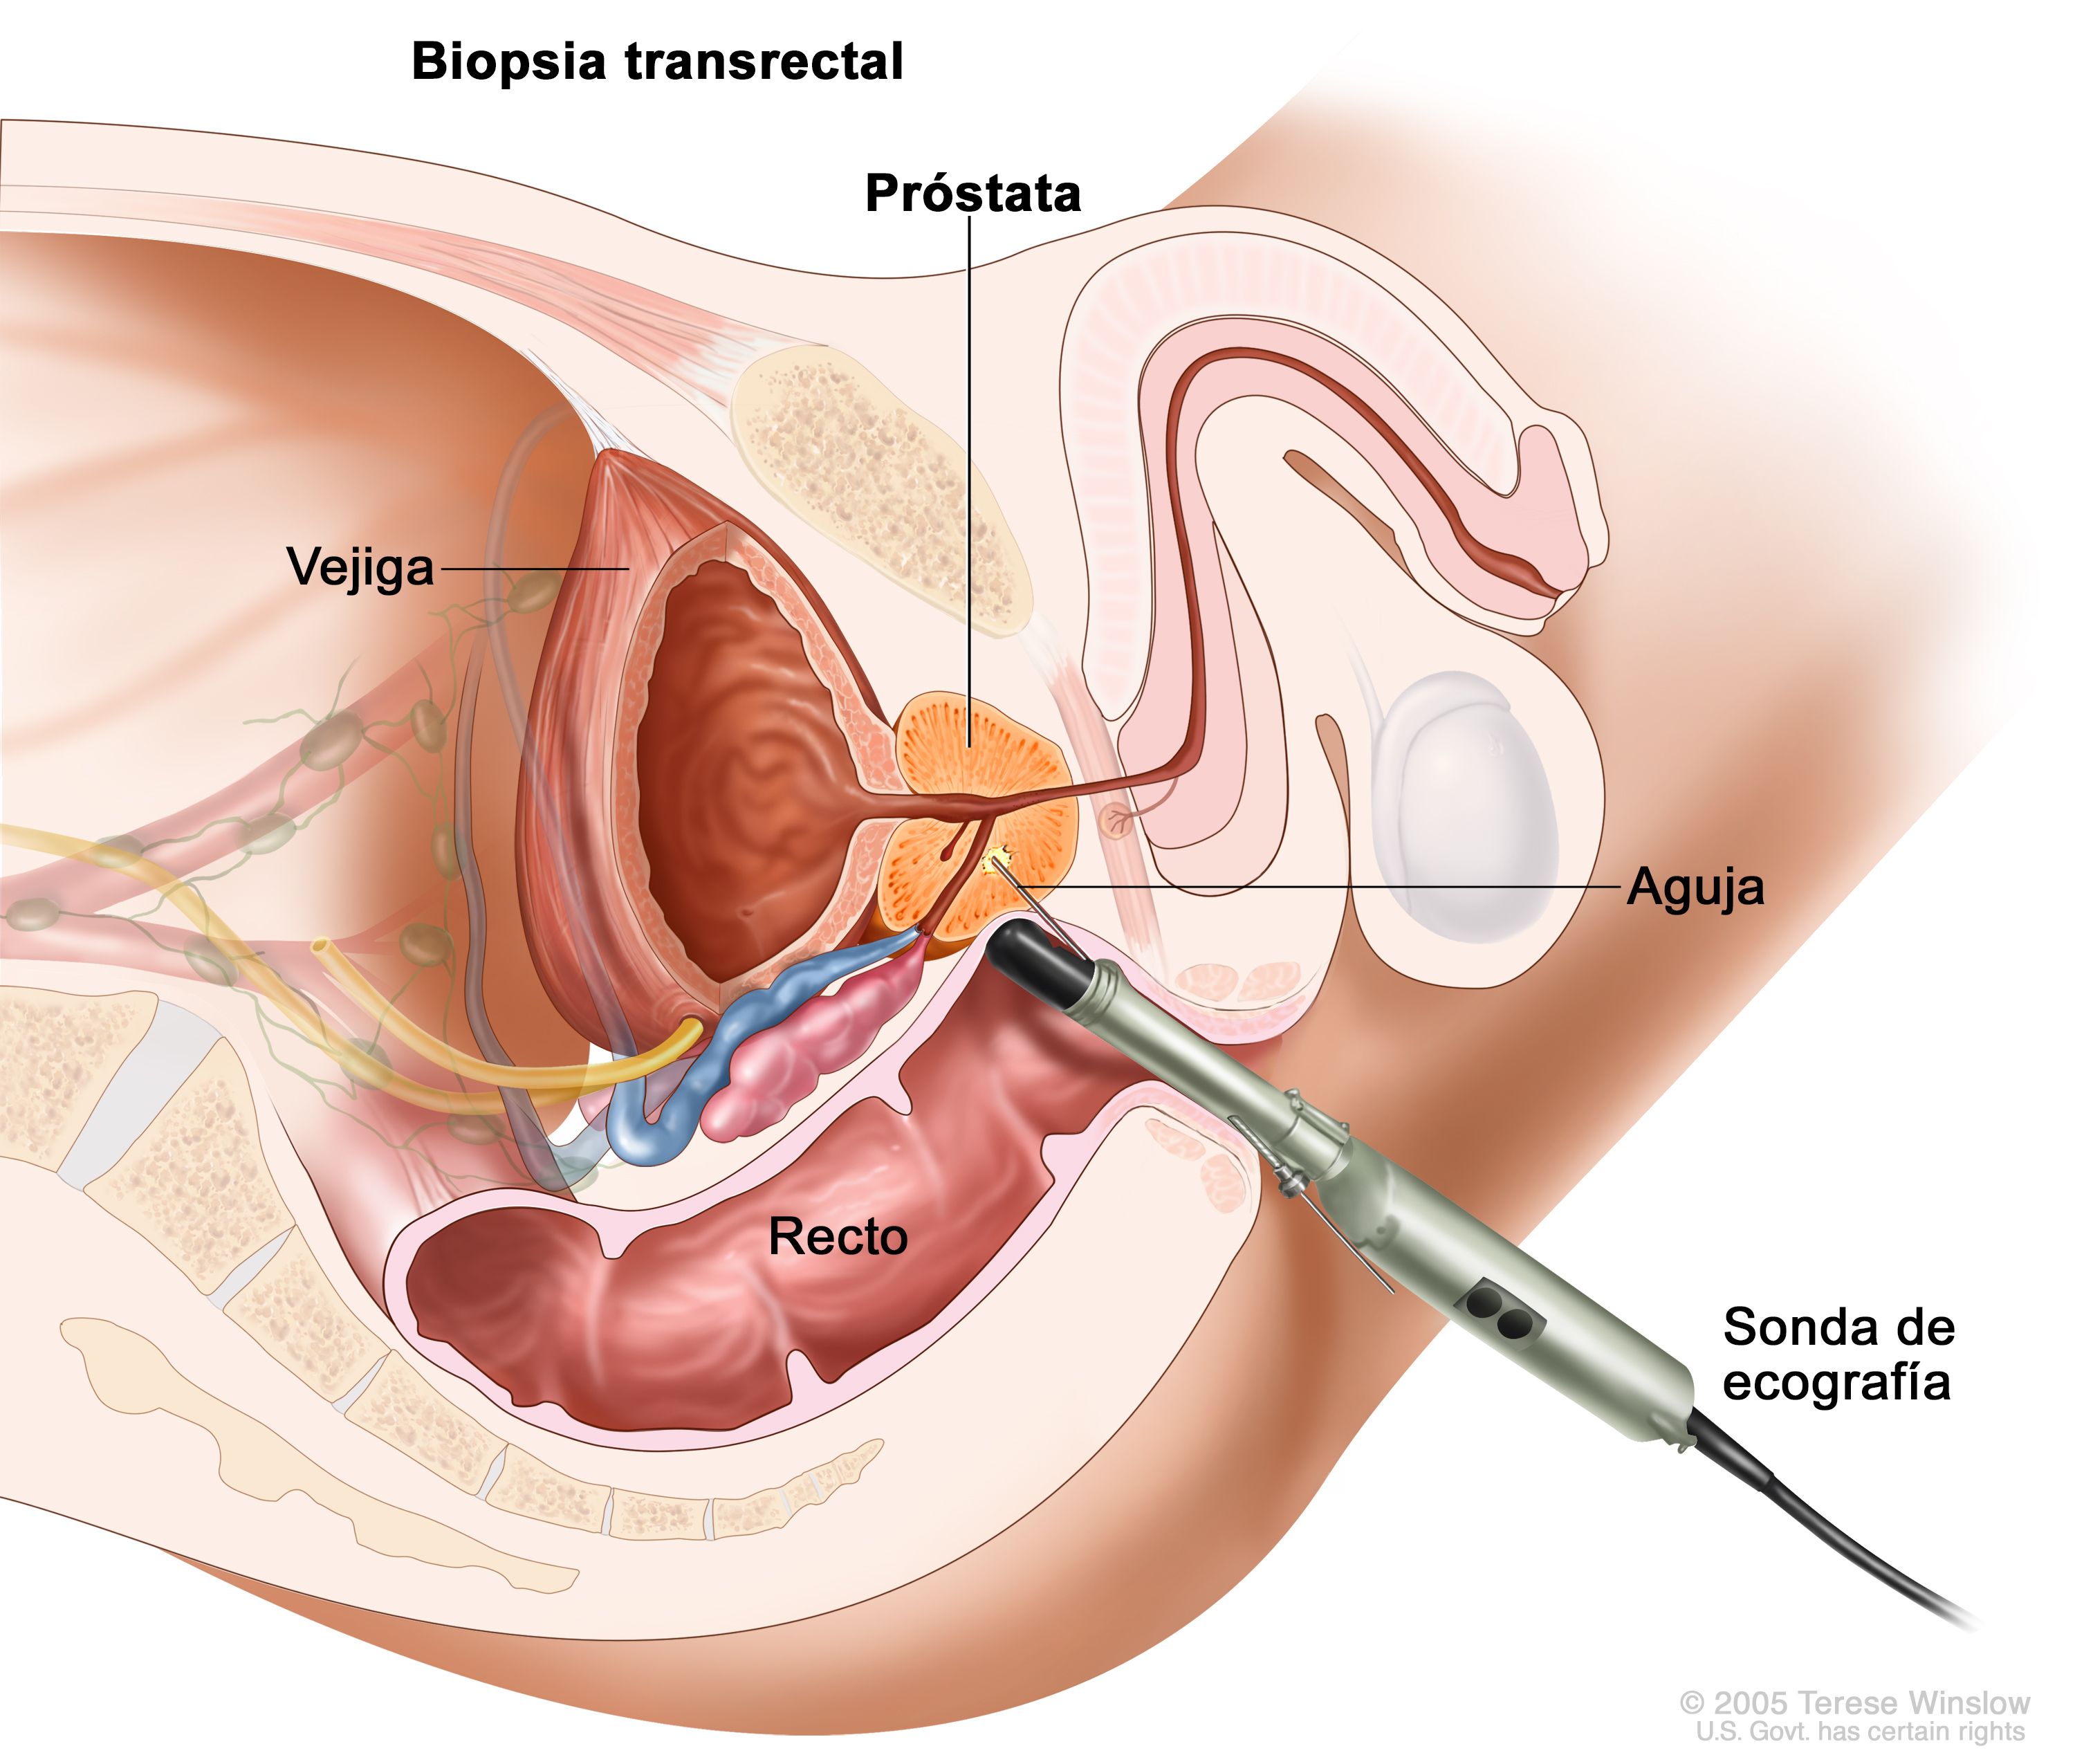 cuáles son los riesgos de una biopsia de próstata